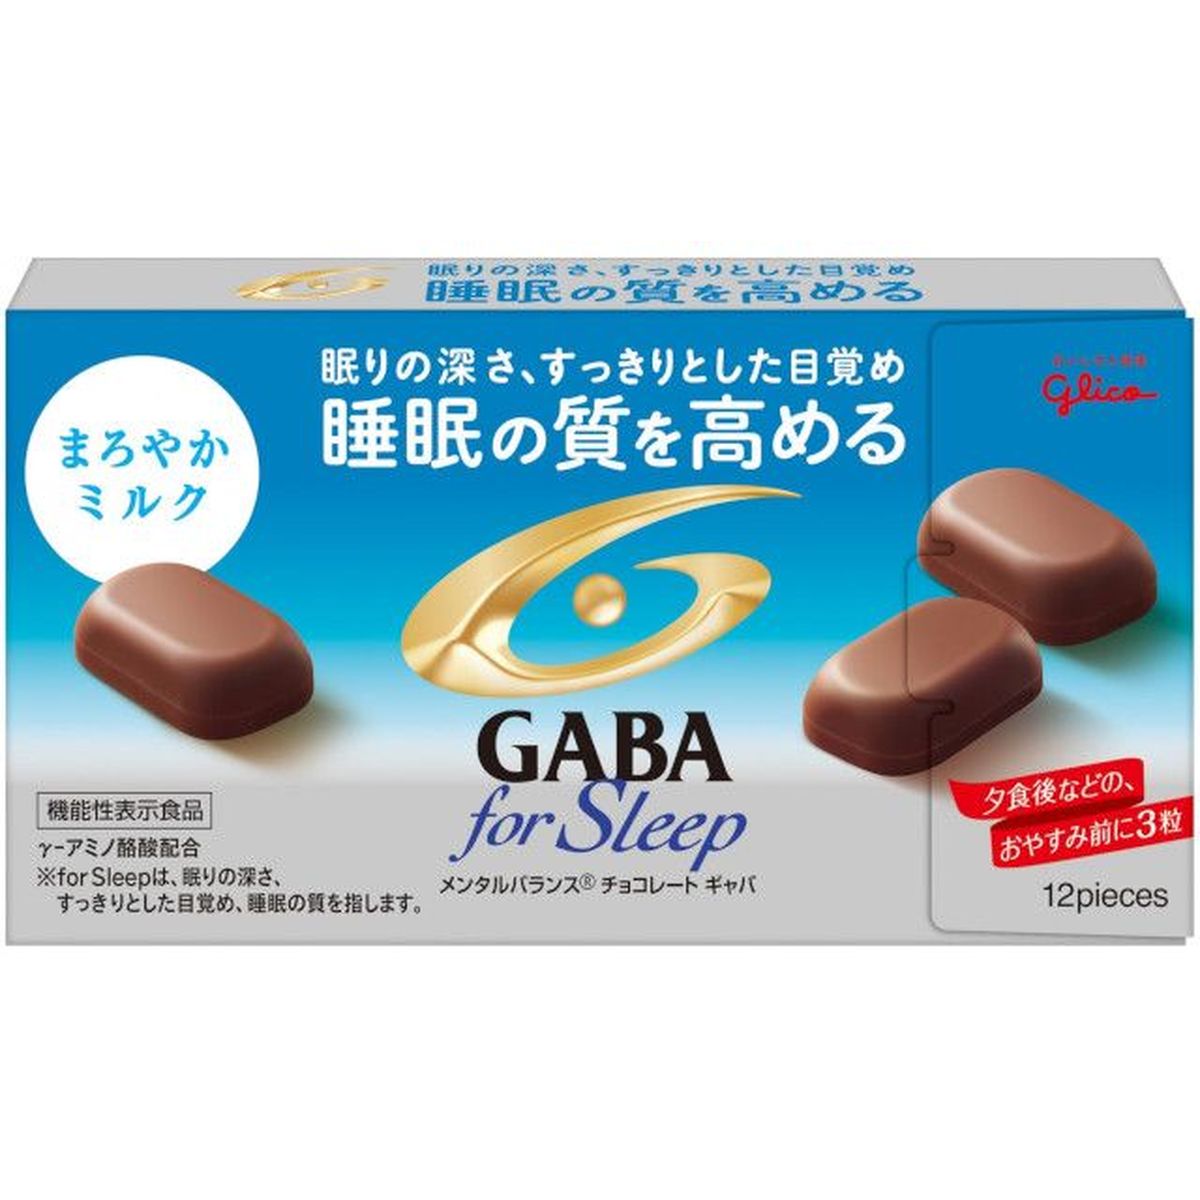 【10個入リ】グリコ GABAフォースリープ ミルク 50g